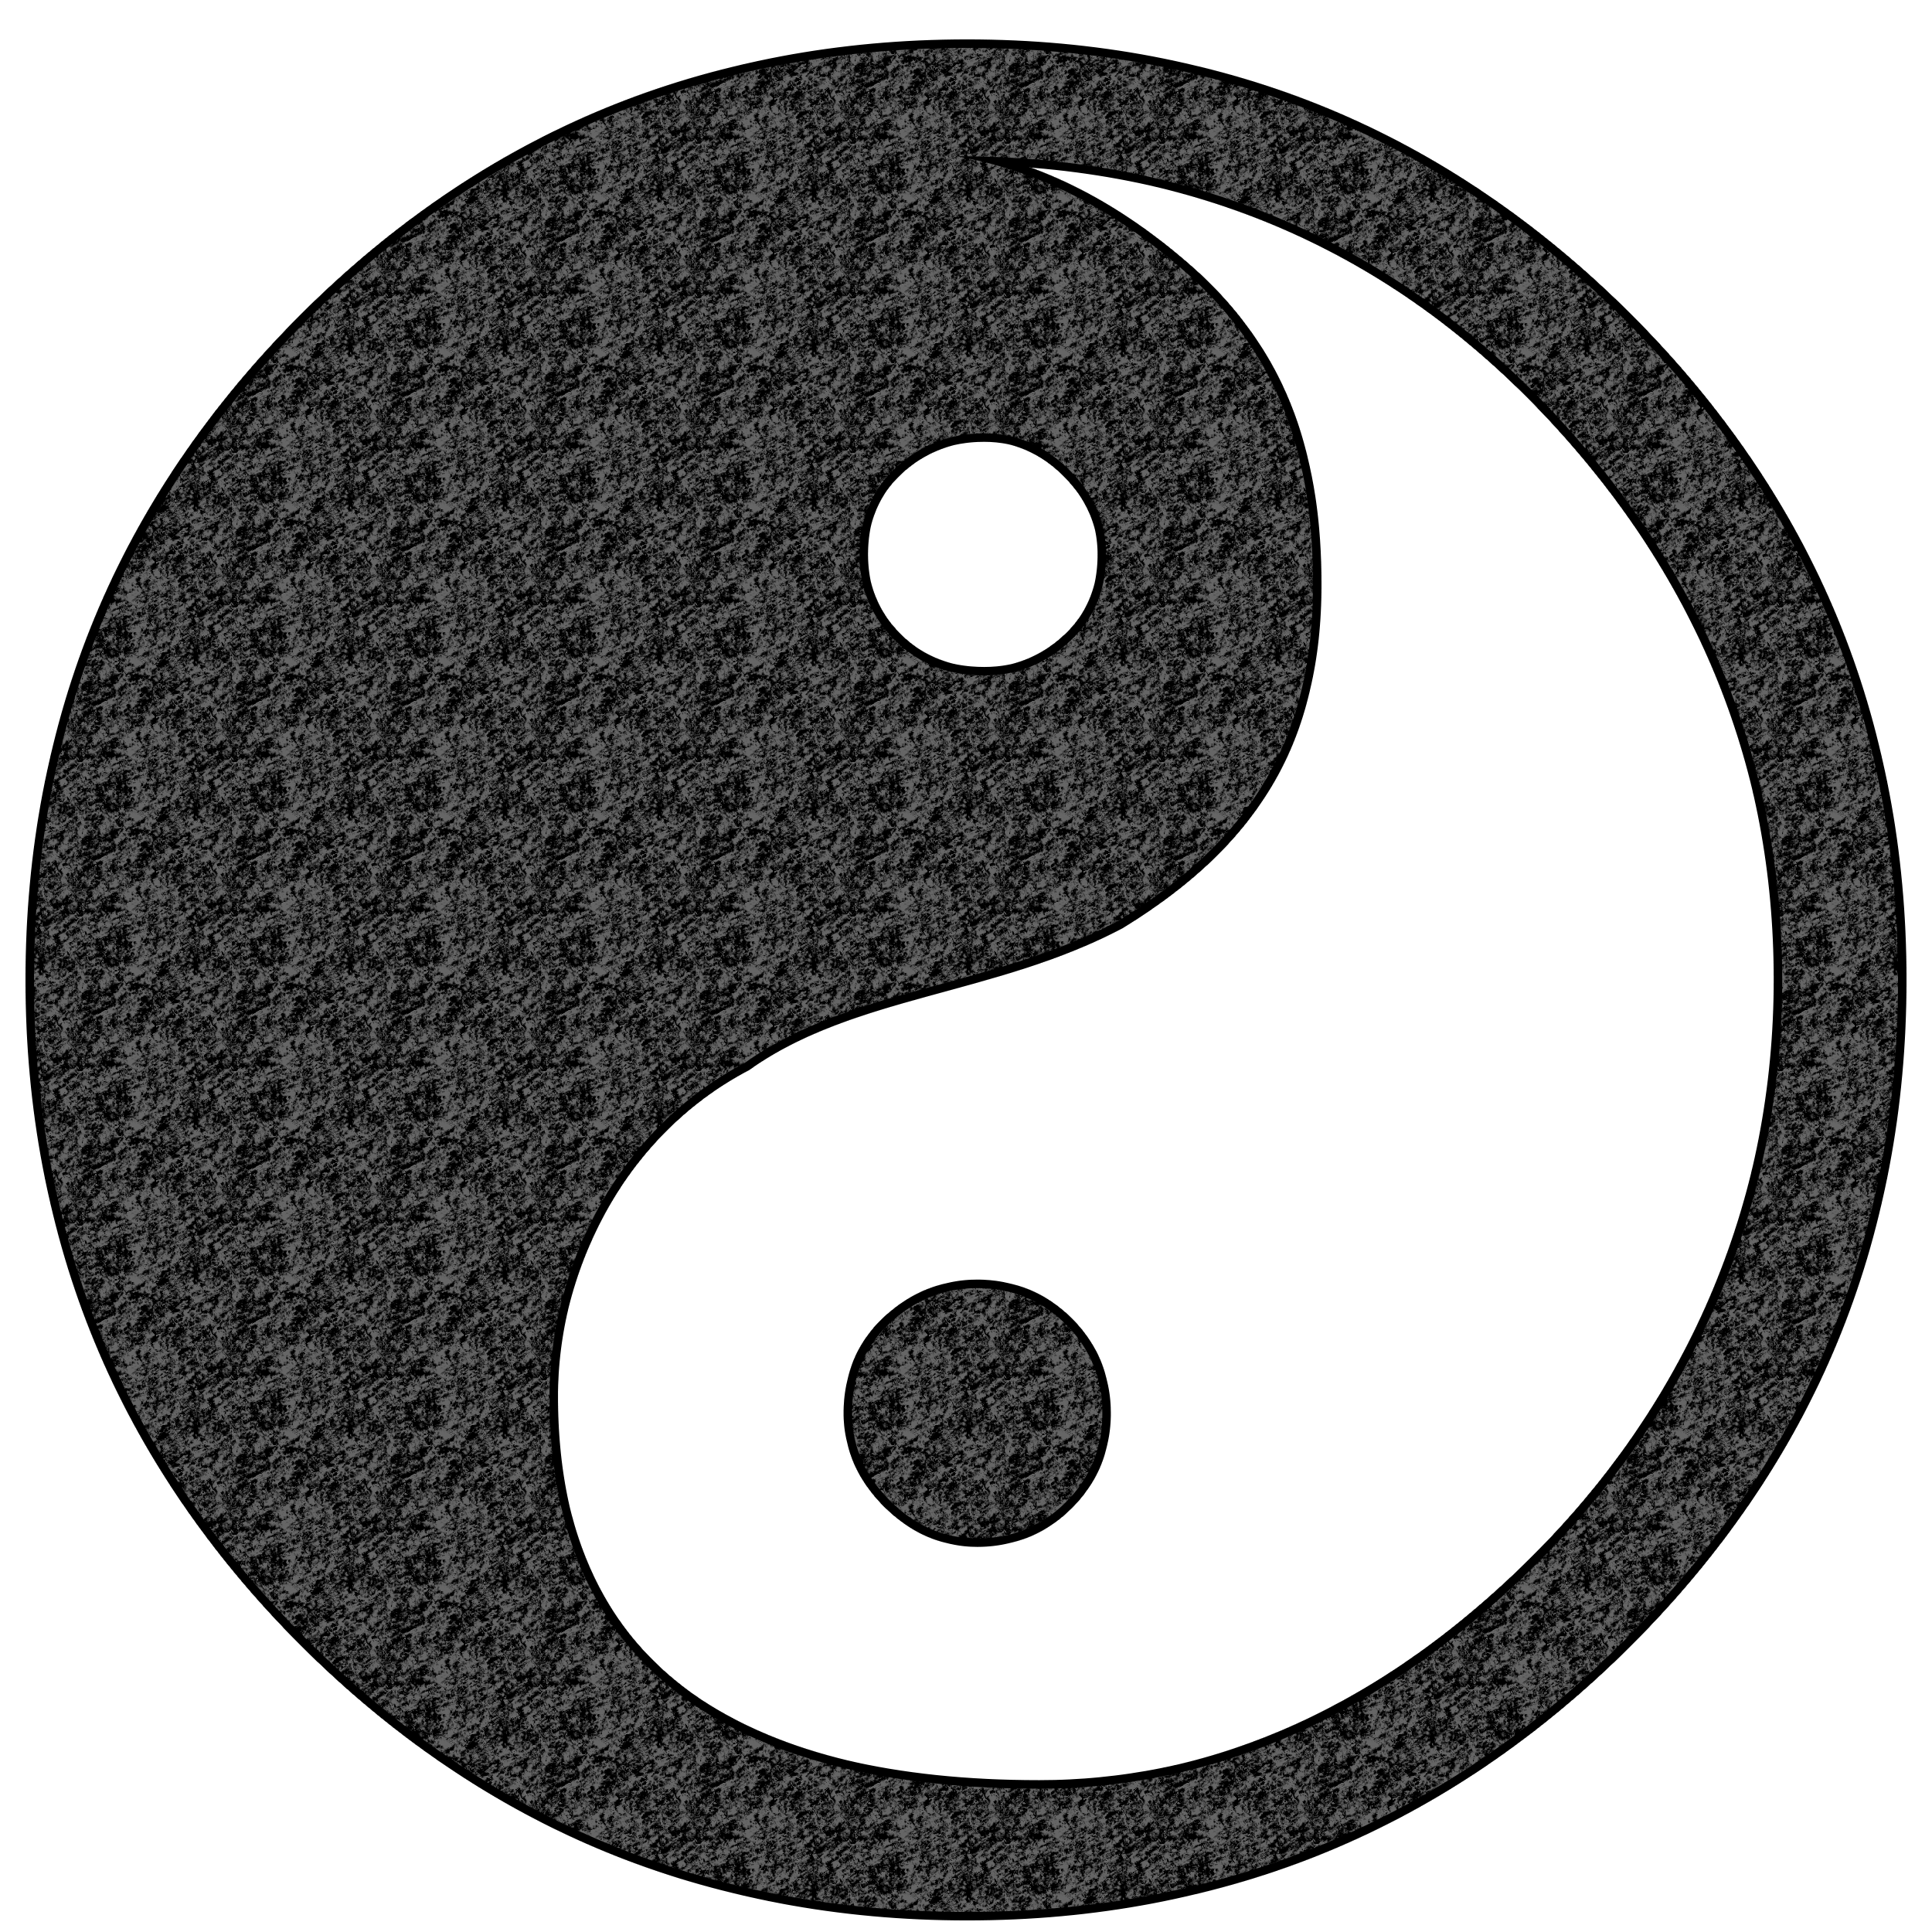 Yin and yang. Символ даосизма Инь-Янь. Китайская Монада Инь-Янь.